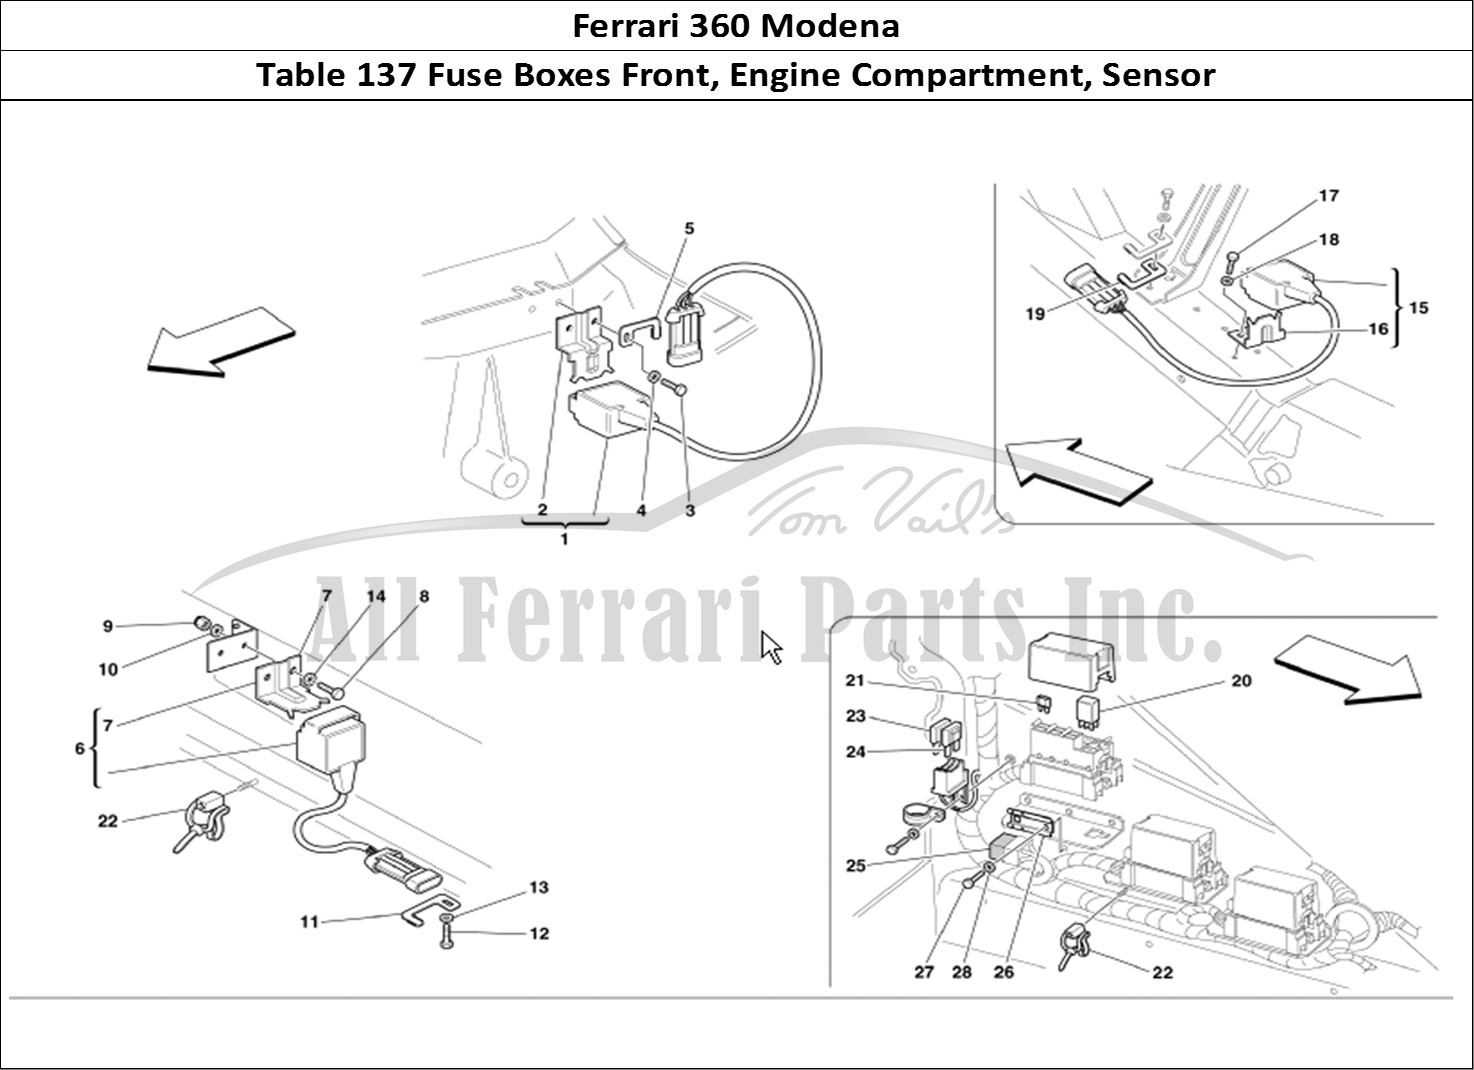 Ferrari Parts Ferrari 360 Modena Page 137 Front and Motor Compartme